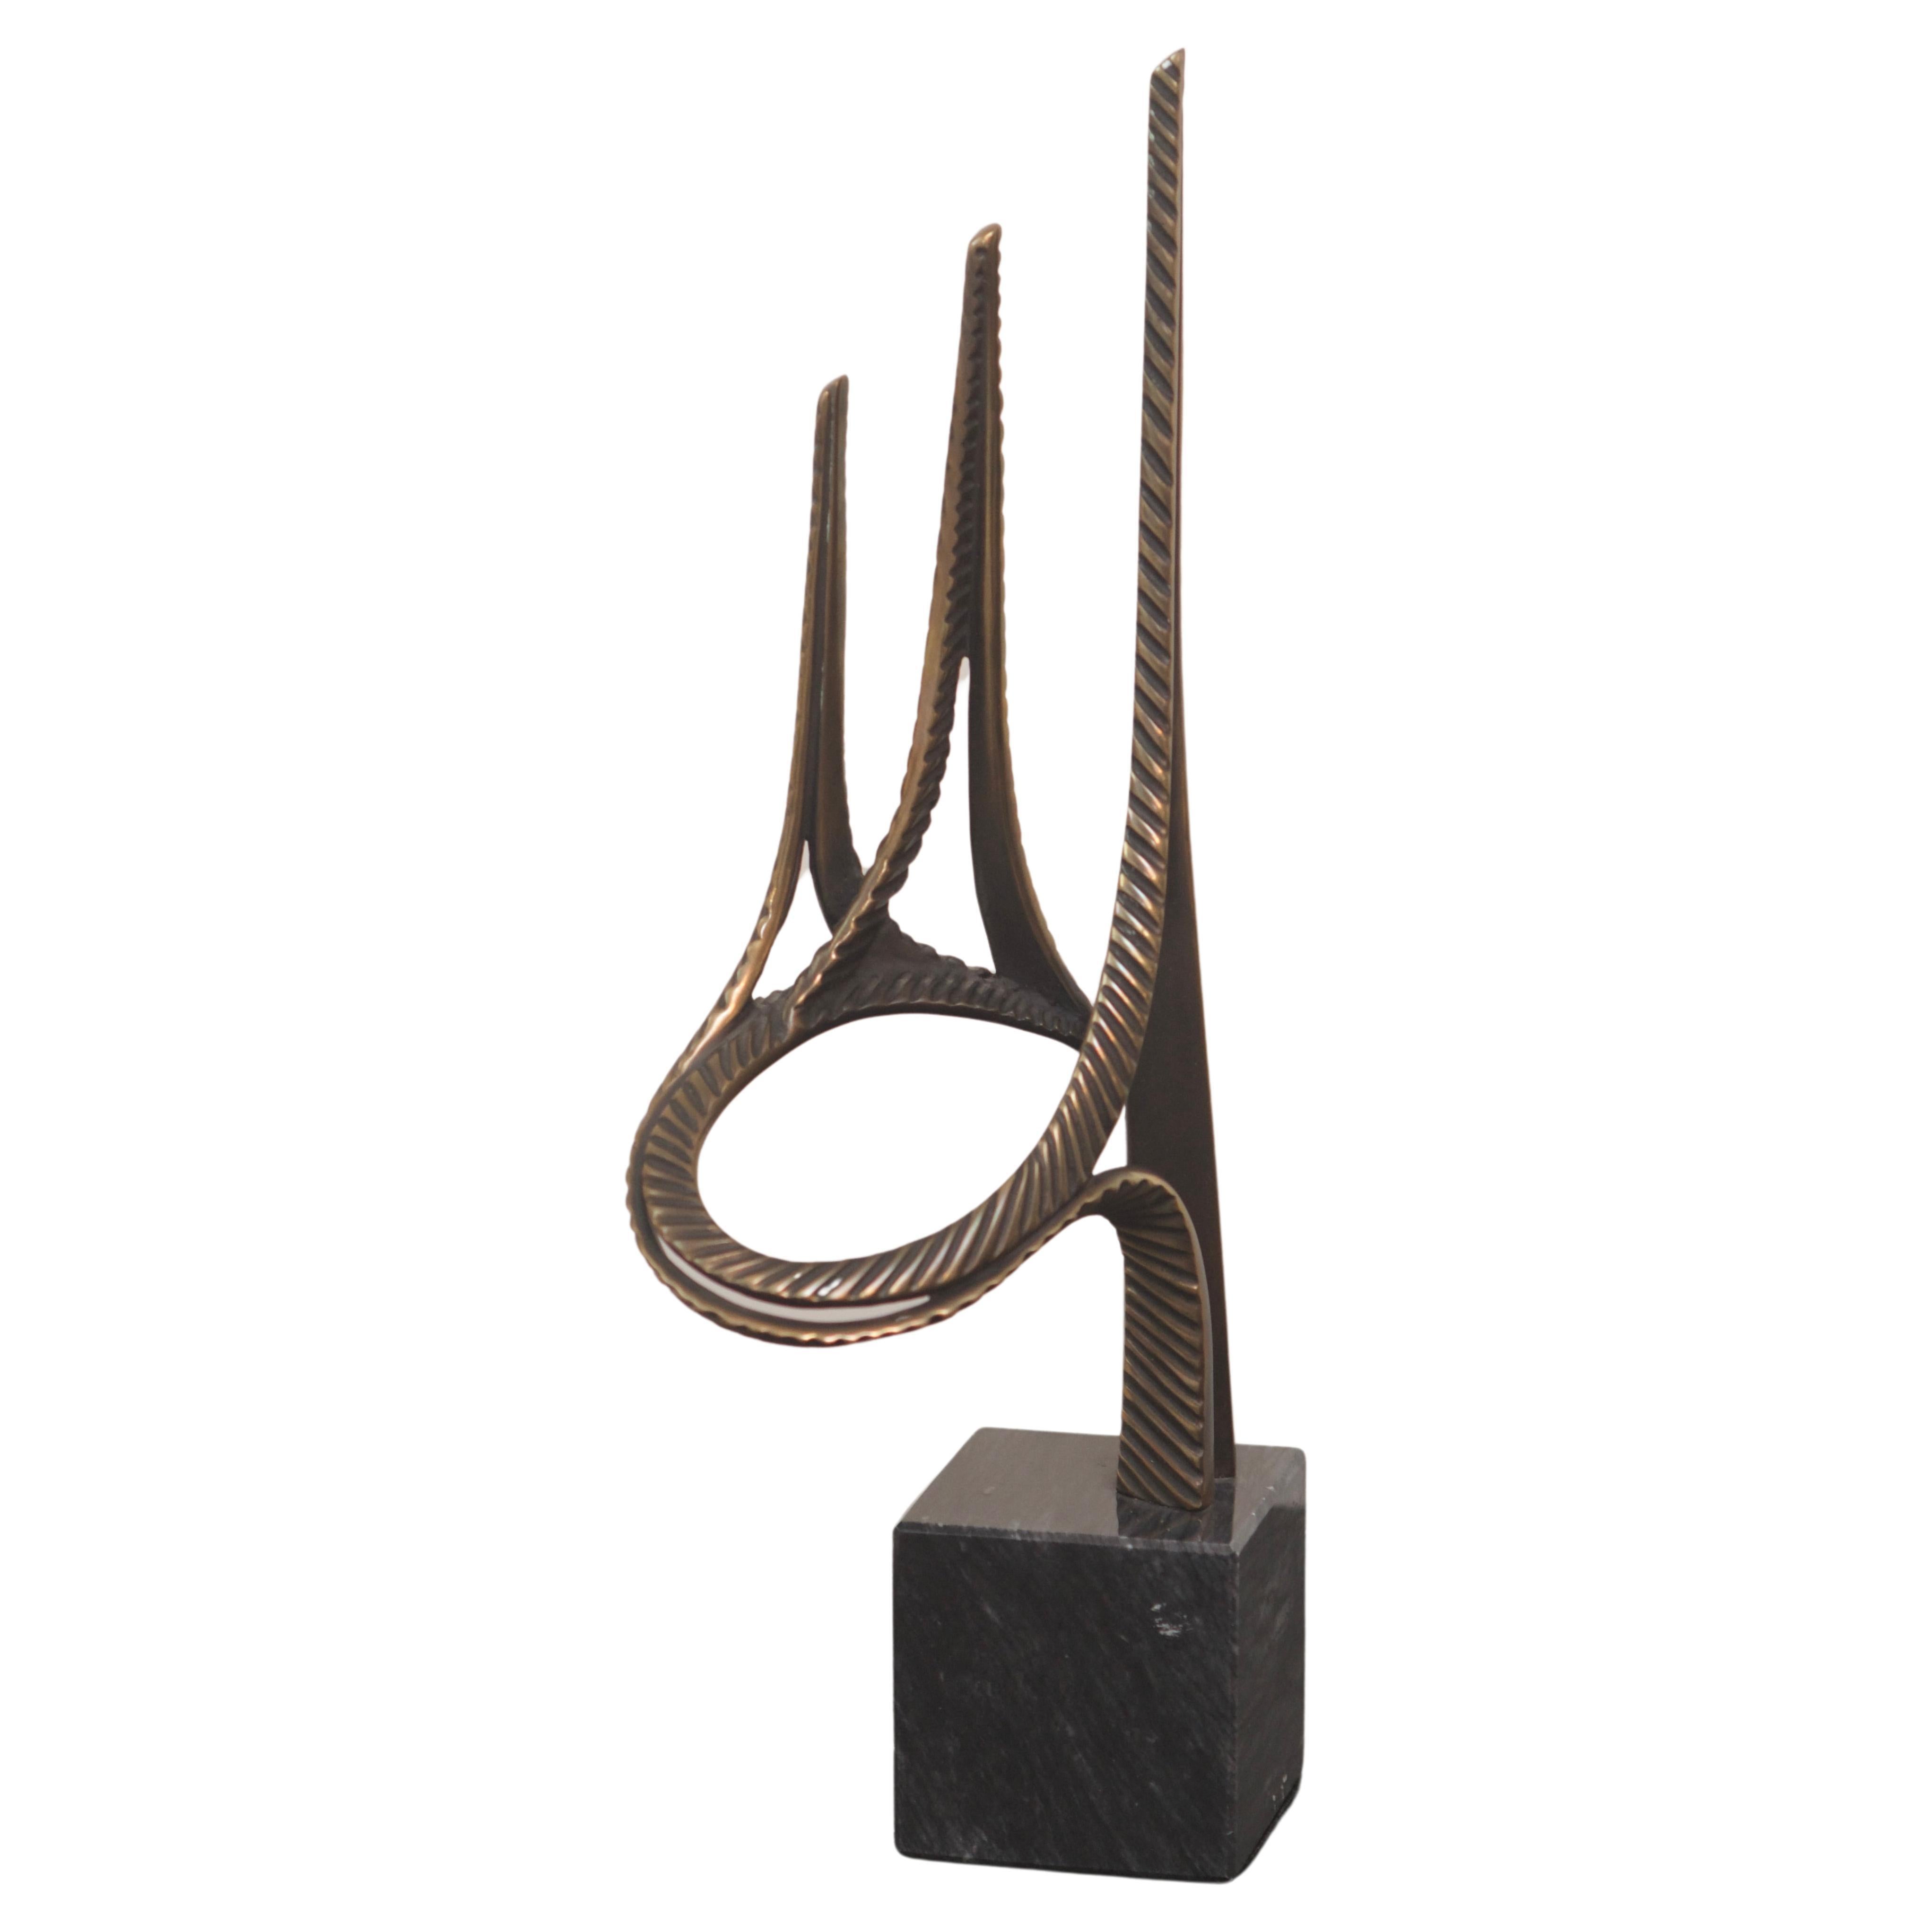 Bob Bennett Bronze-Skulptur der abstrakten modernistischen Skulptur der Goldenen Torbogen, signiert